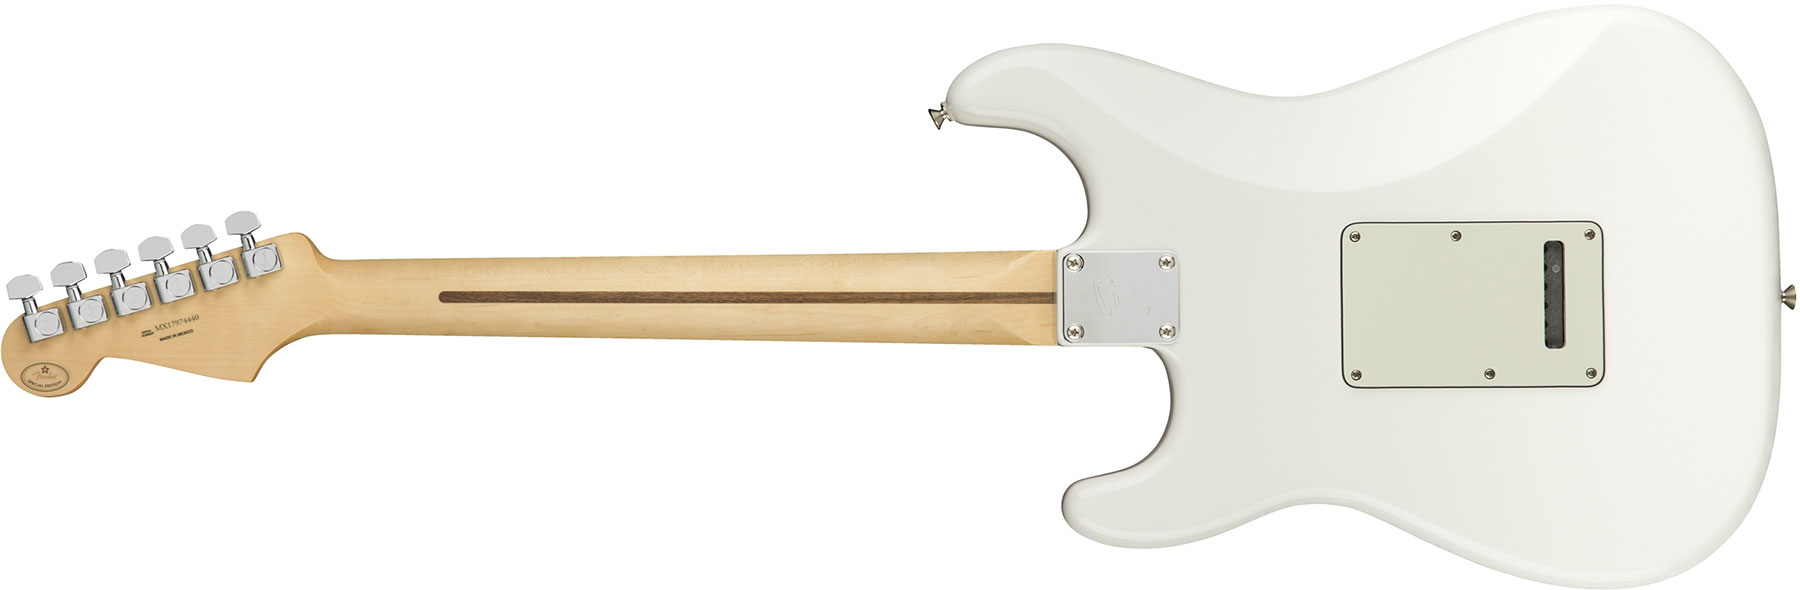 Fender Strat Player Mex Hss Pf - Polar White - Elektrische gitaar in Str-vorm - Variation 1